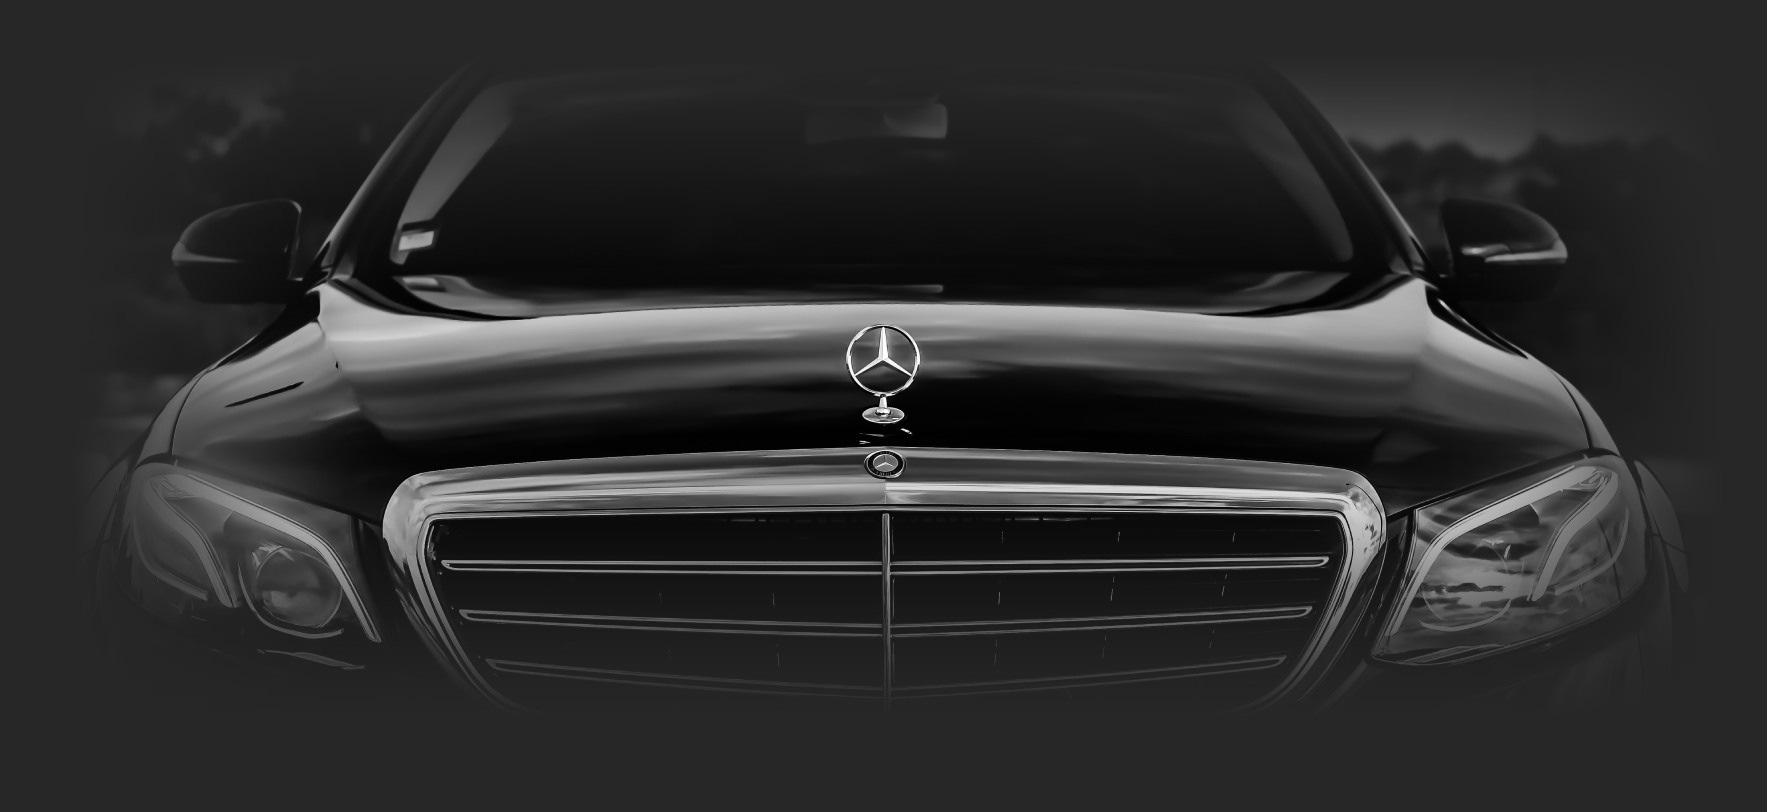 Mercedes-Benz car